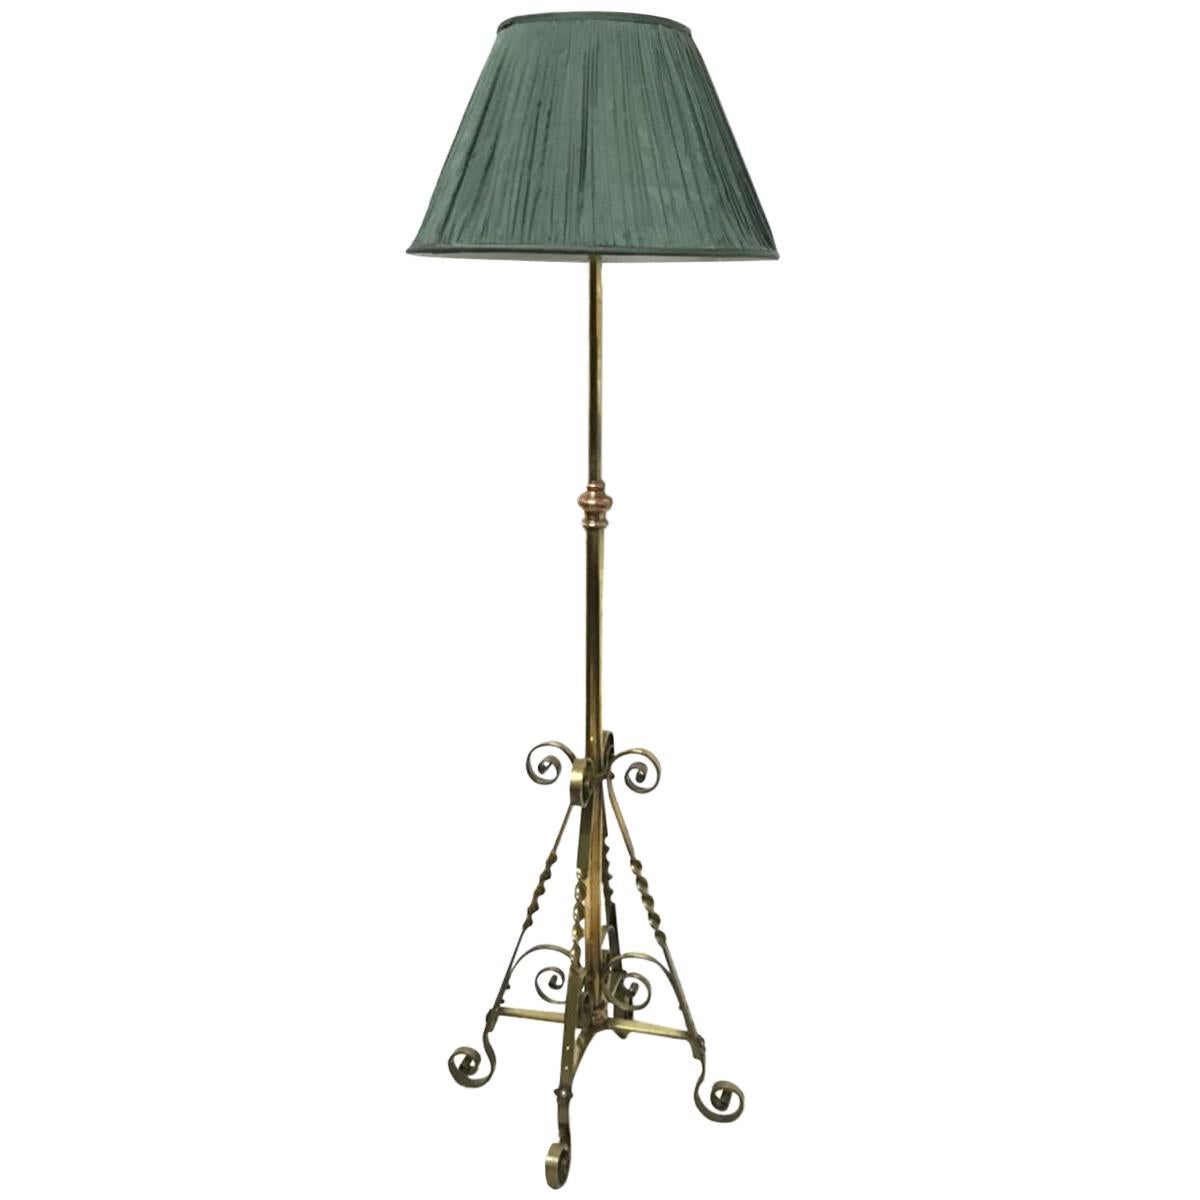 Benham & Froud an Arts & Crafts Copper & Brass Telescopic Electric Standard Lamp